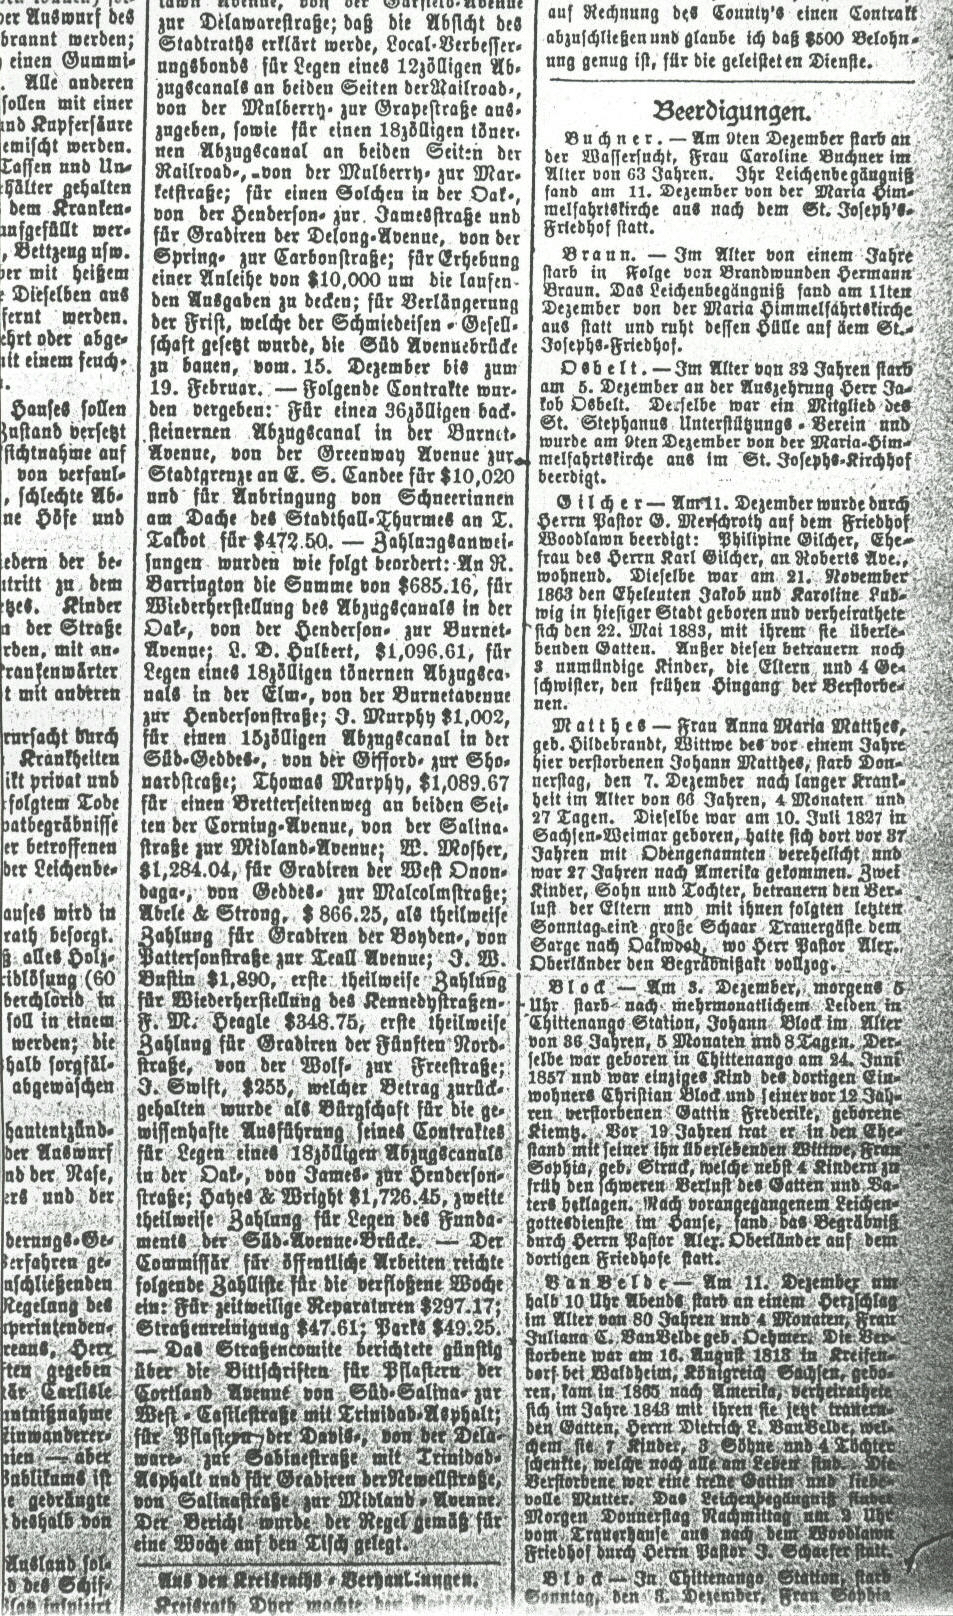 Syracuse Union, 13 December 1893, 
page 5, col. 8